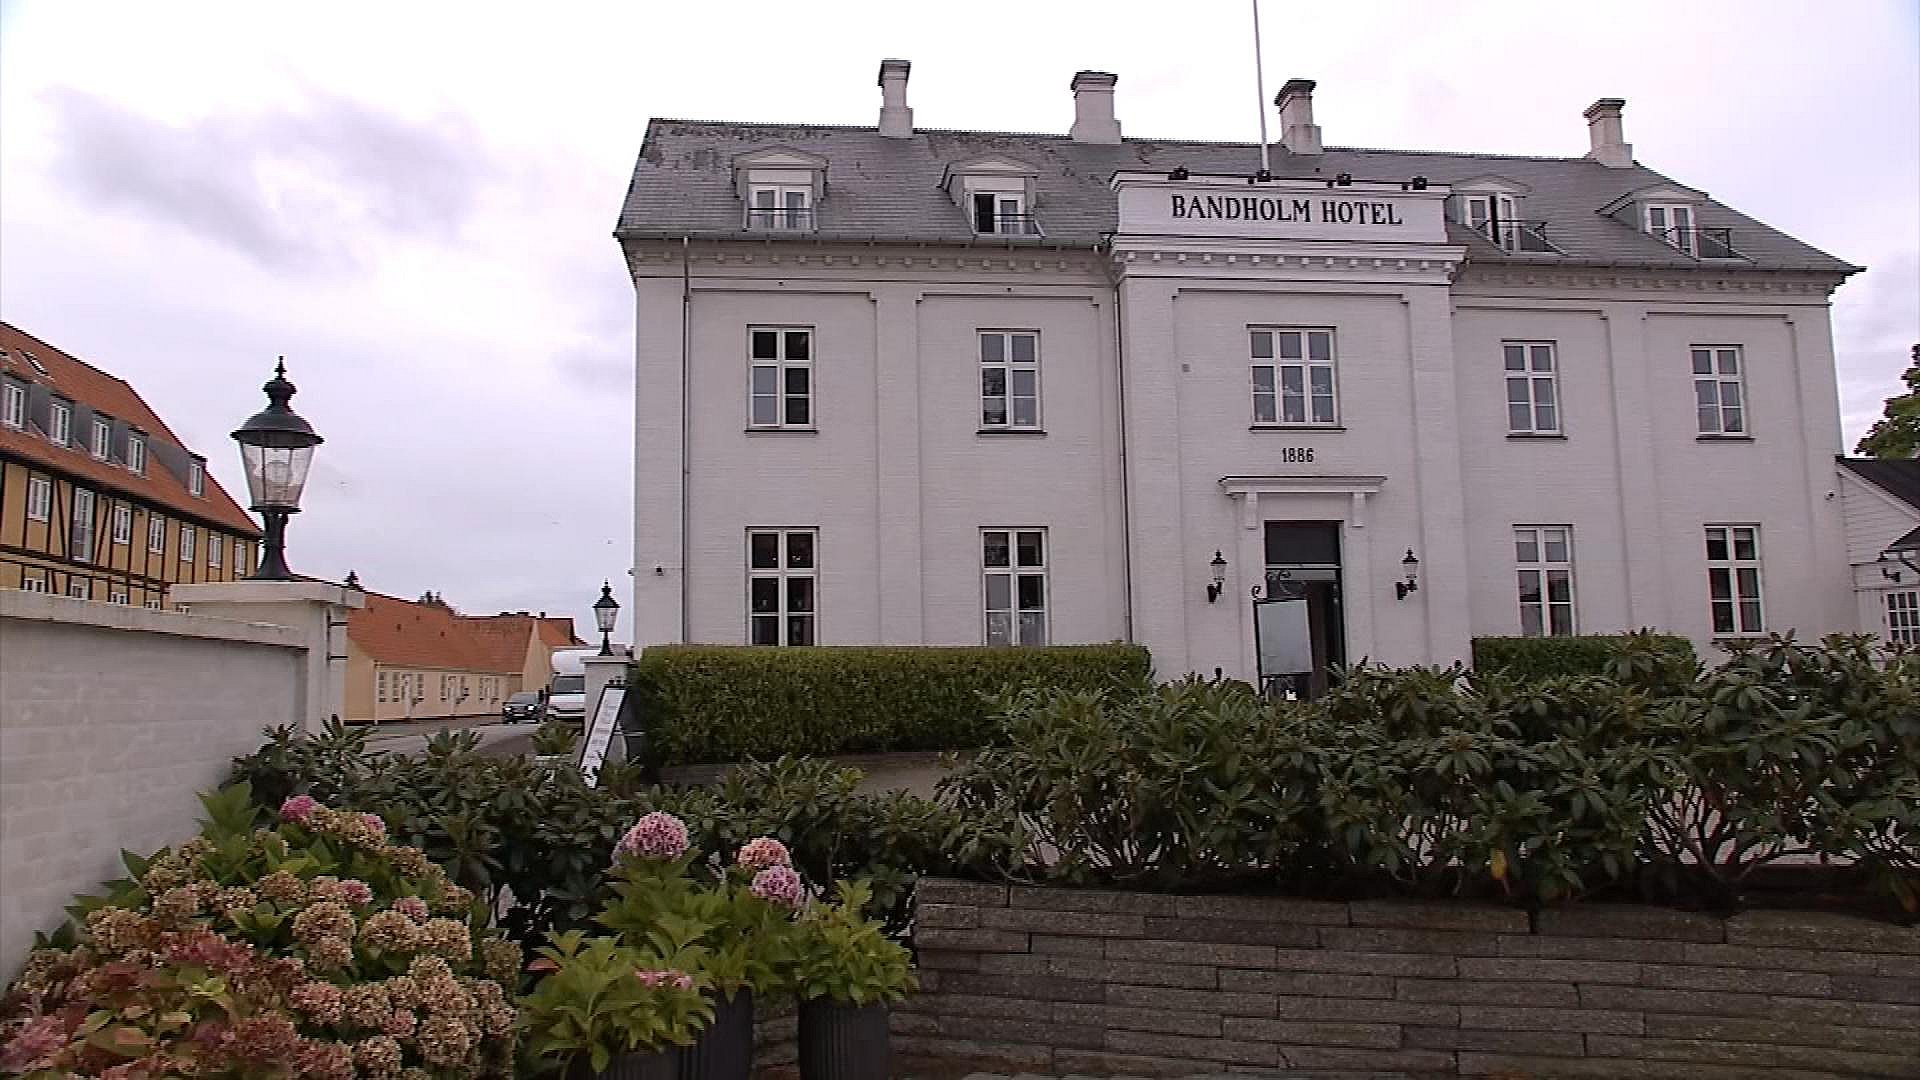 Bandholm hotel ejer hvem Bandholm